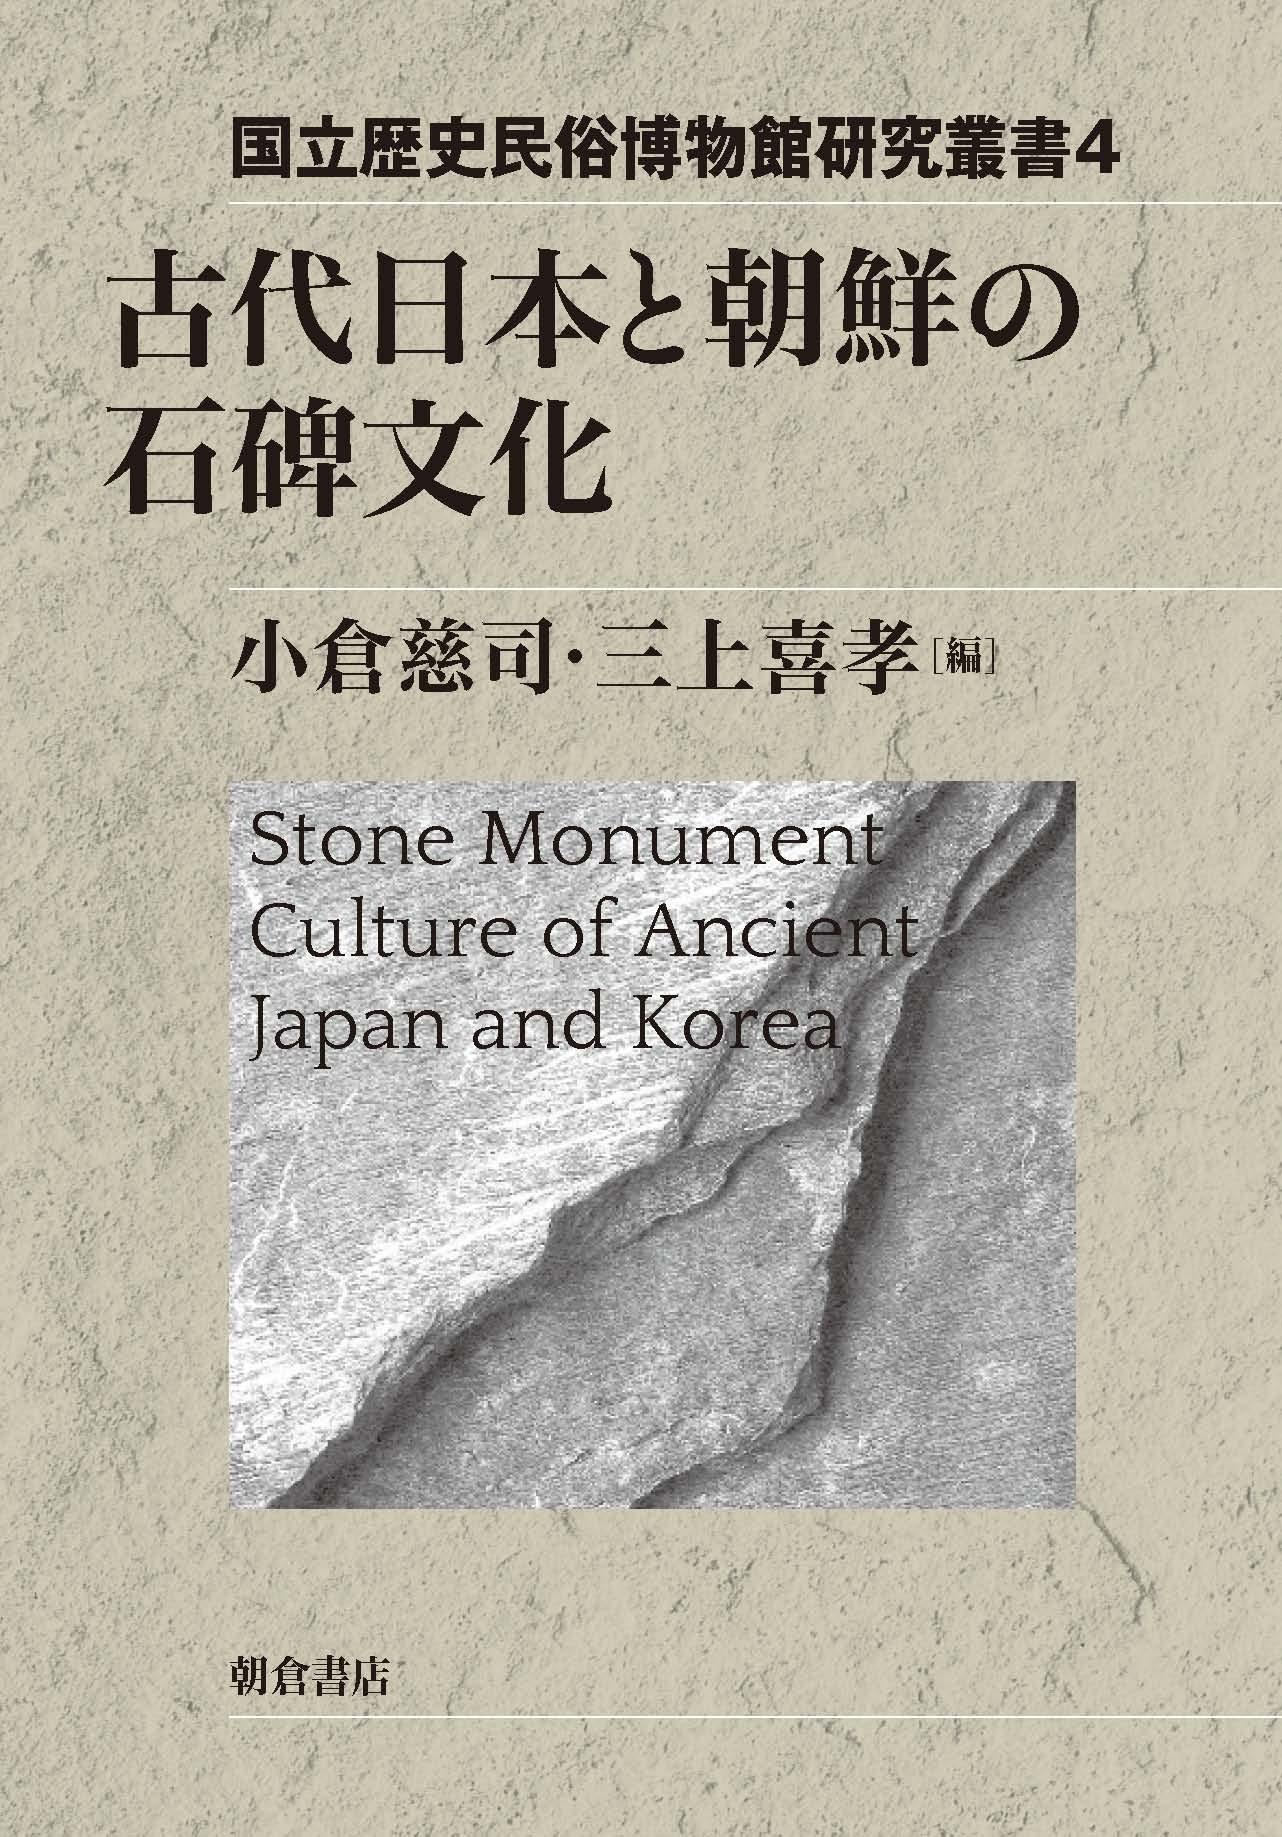 写真： 古代日本と朝鮮の石碑文化